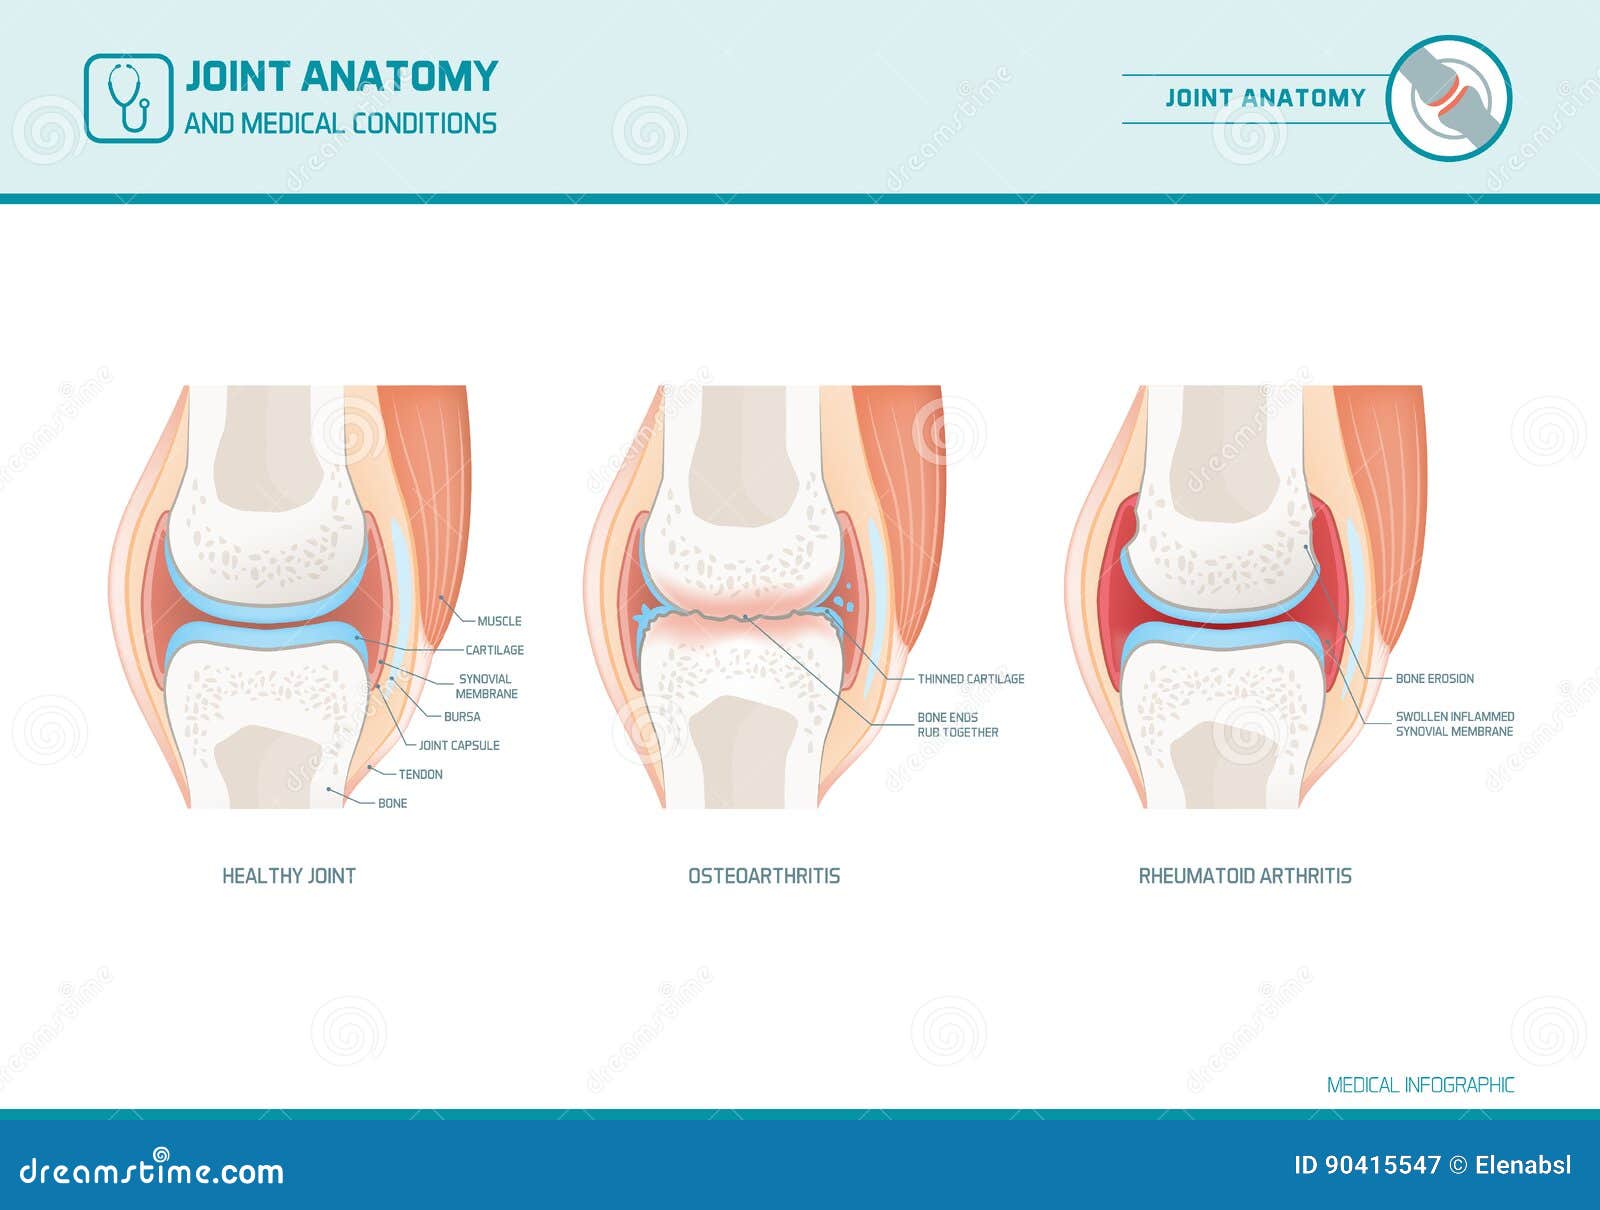 joint anatomy, osteoarthritis and rheumatoid arthritis infographic